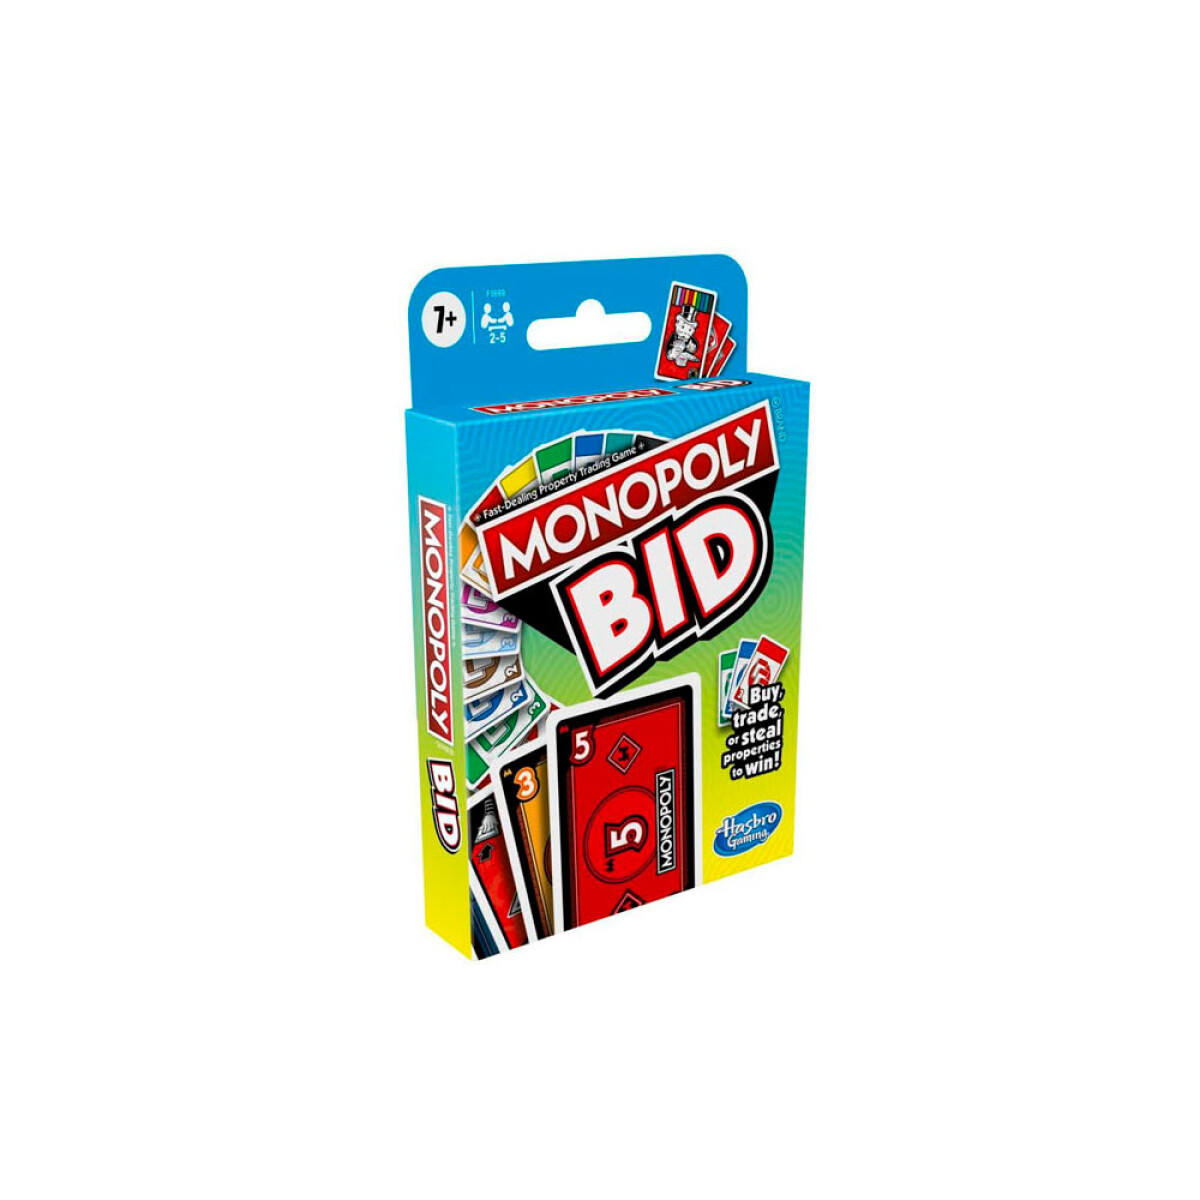 Monopoly Bid F1699l021 